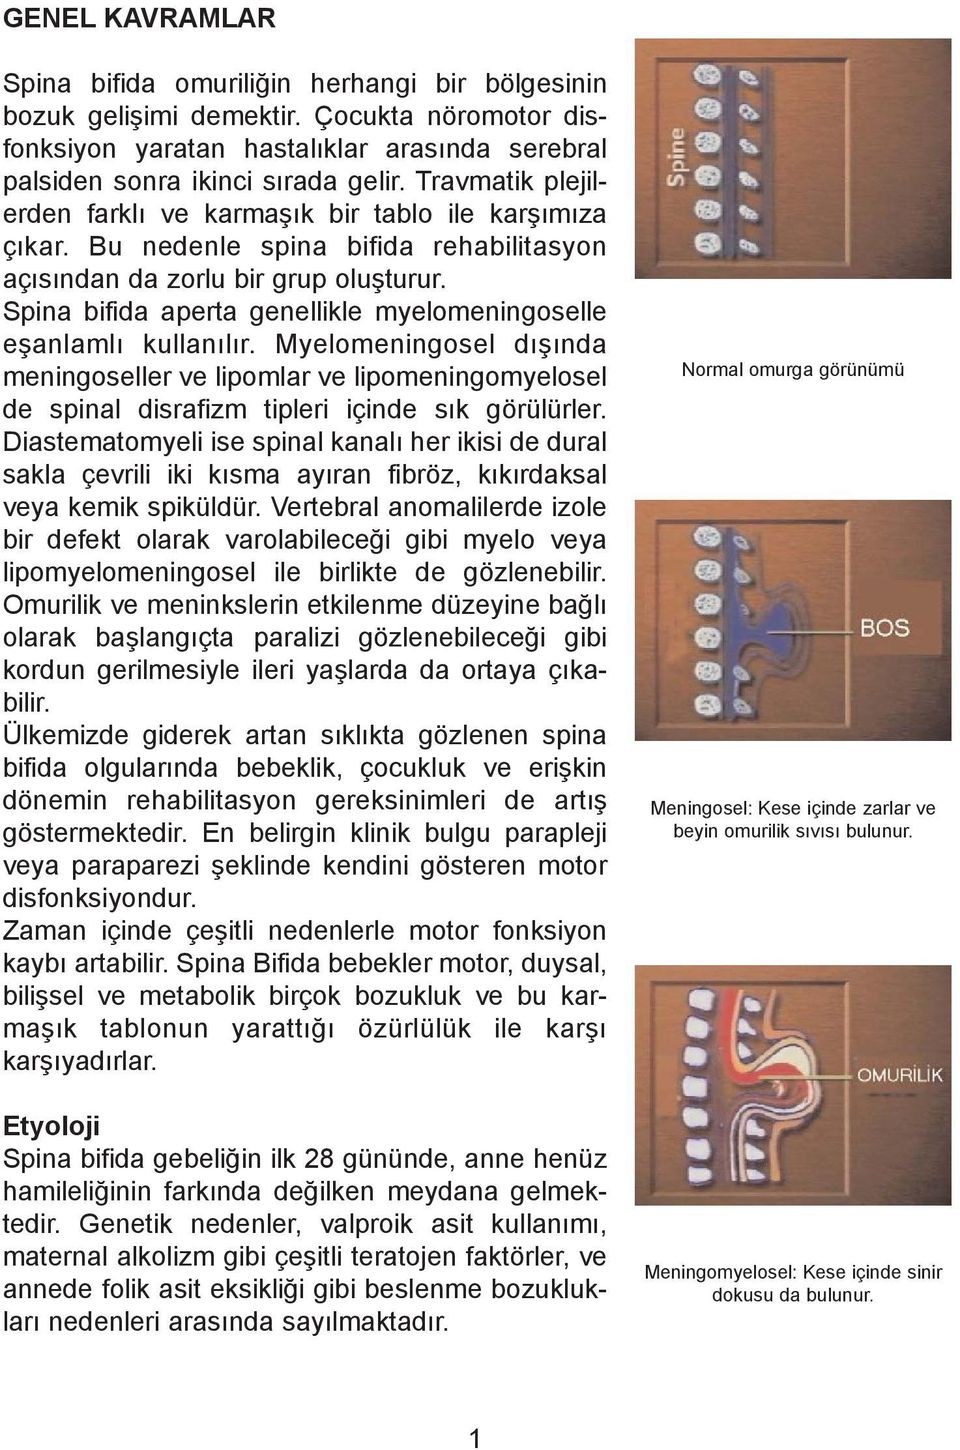 Spina bifida aperta genellikle myelomeningoselle eþanlamlý kullanýlýr. Myelomeningosel dýþýnda meningoseller ve lipomlar ve lipomeningomyelosel de spinal disrafizm tipleri içinde sýk görülürler.